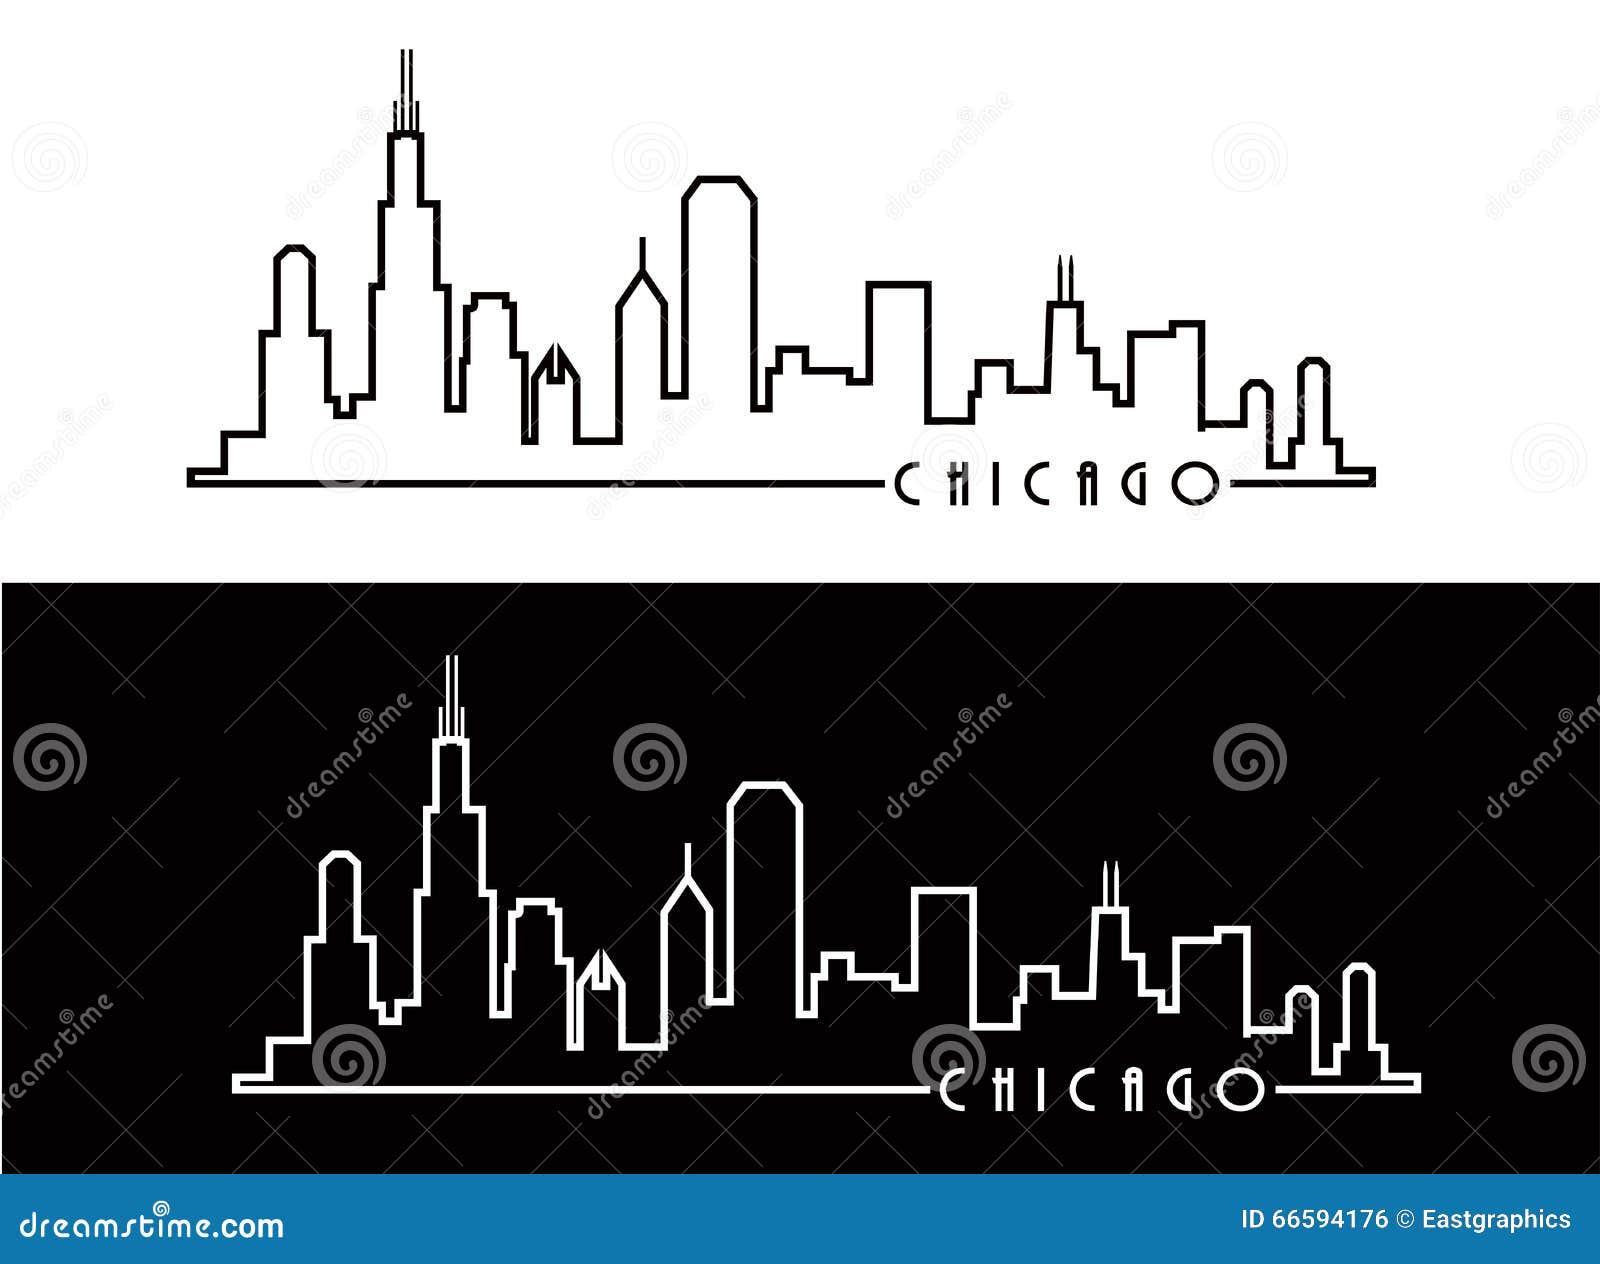 Chicago Skyline Outline Sketch Stock Photography | CartoonDealer.com